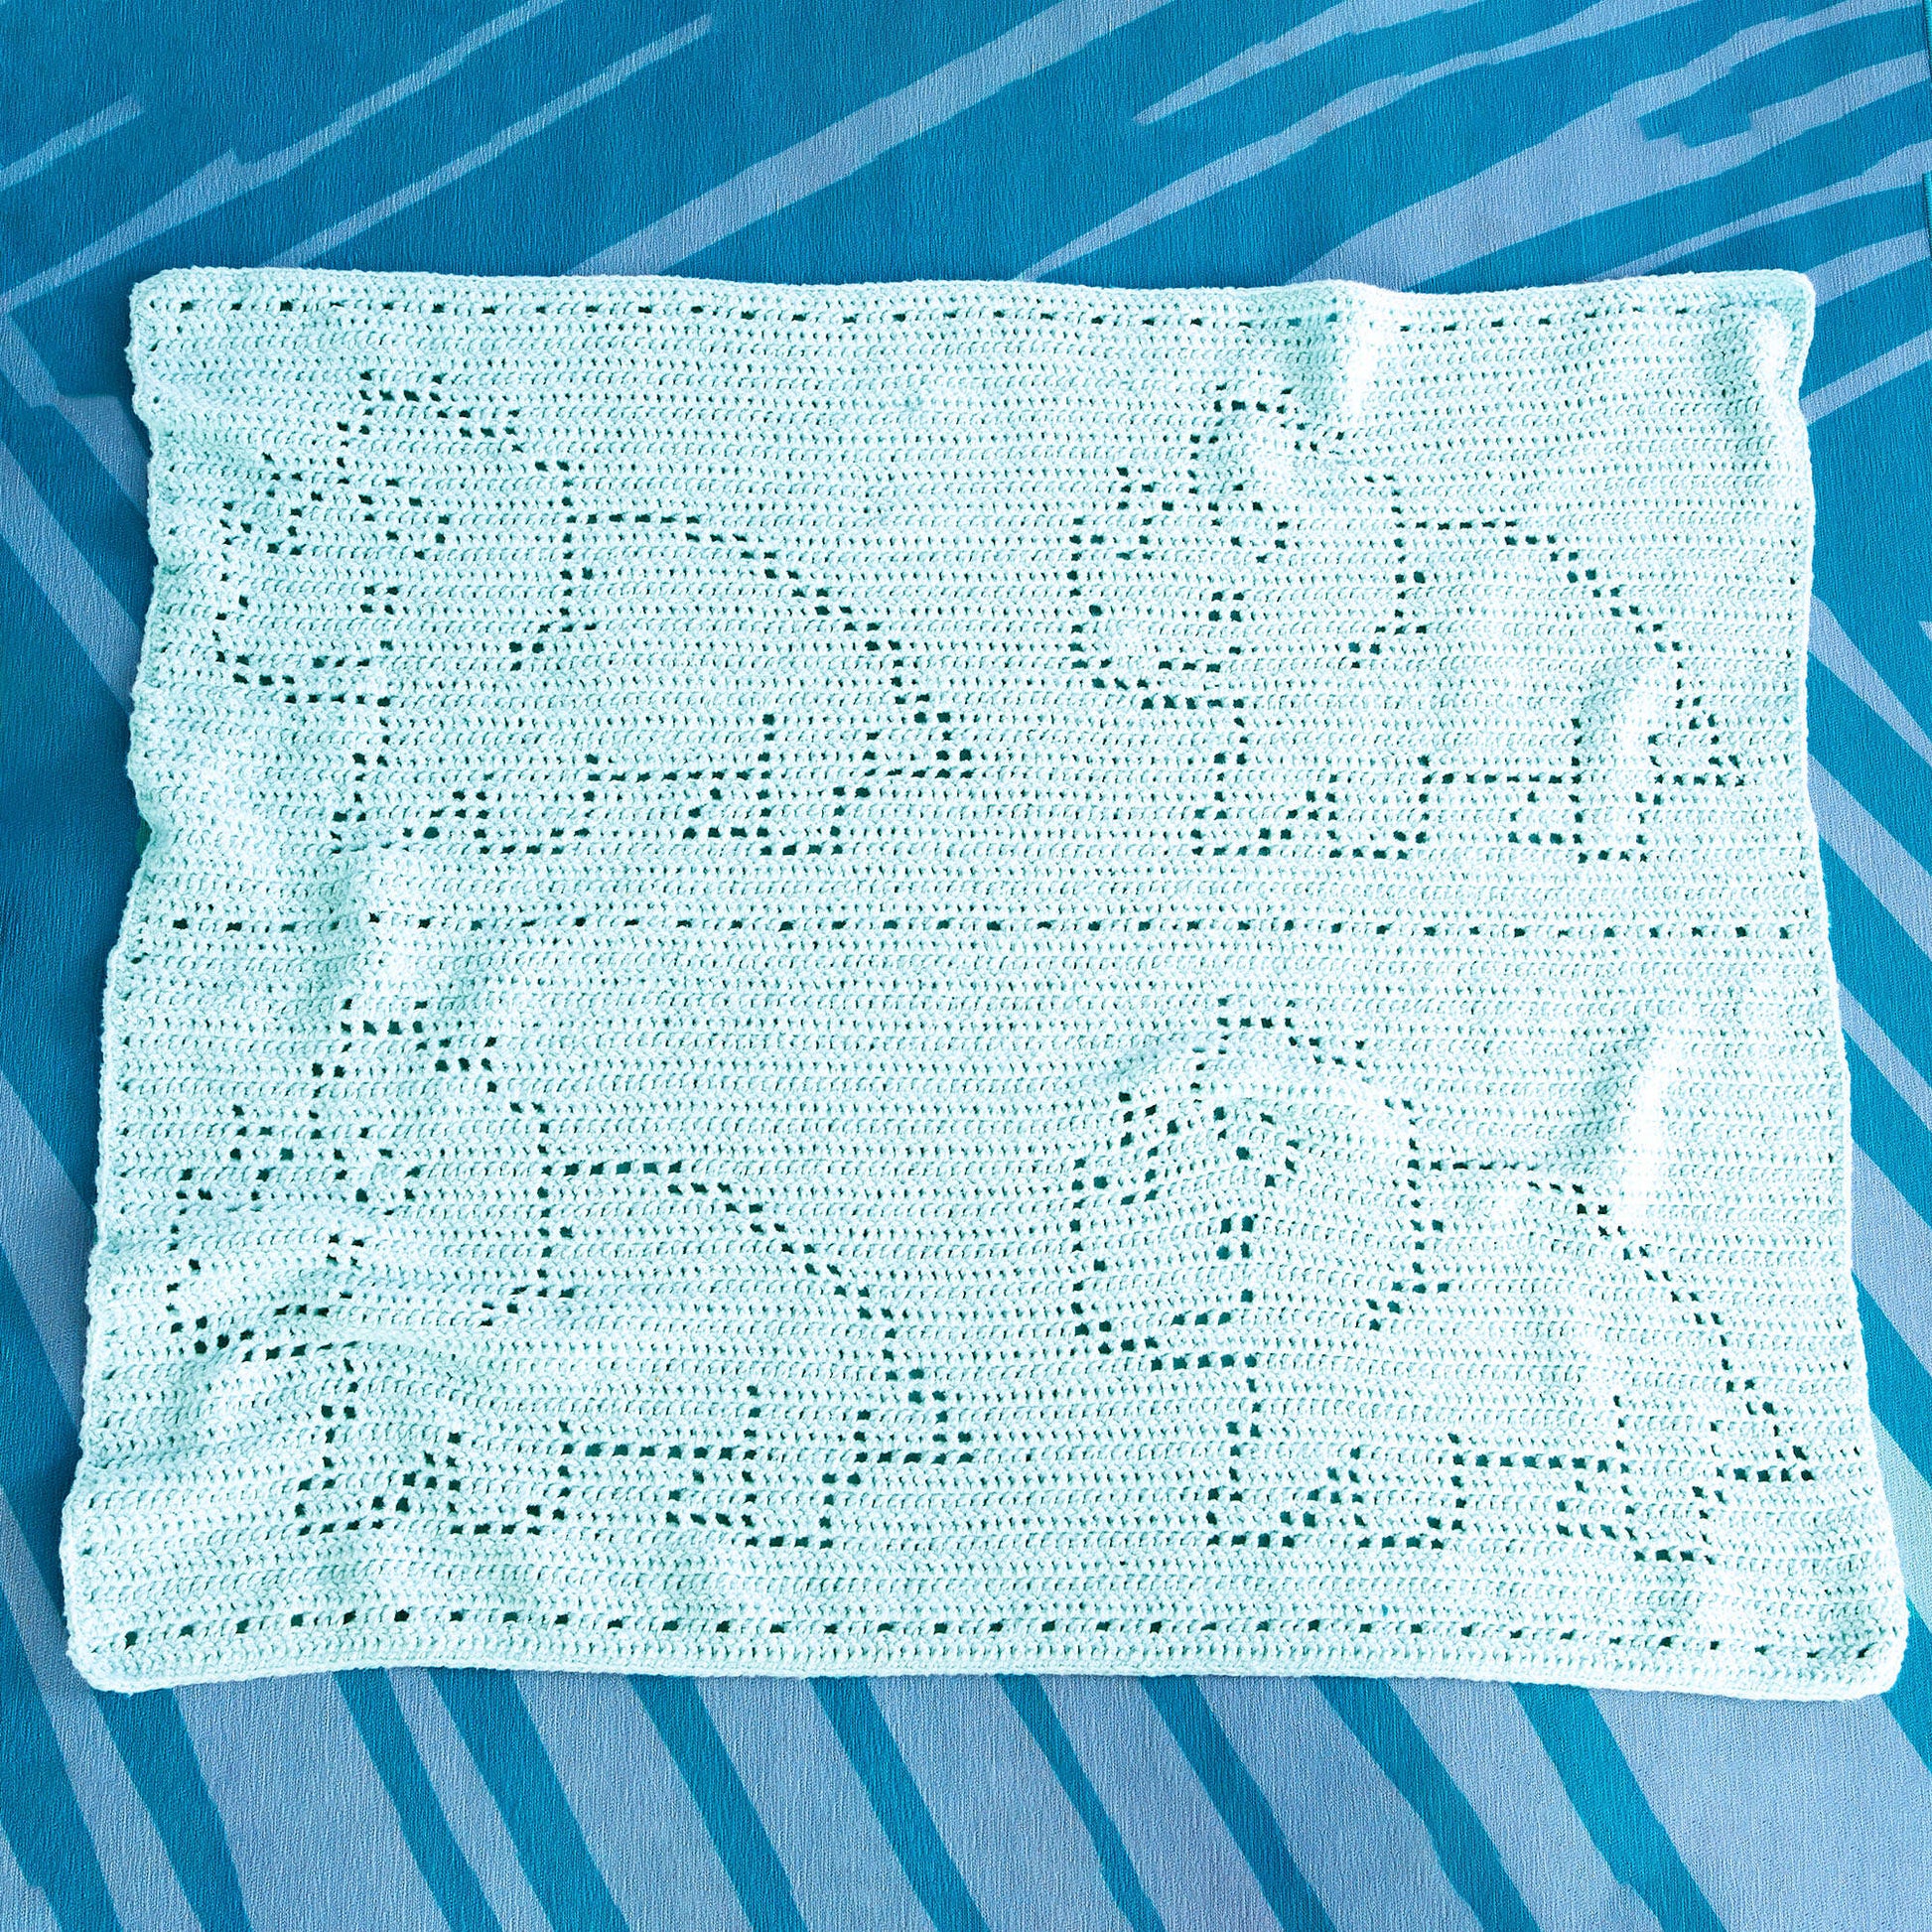 Bernat Filet Crochet Dinosaur Baby Blanket Crochet Blanket made in Bernat Forever Fleece Finer yarn